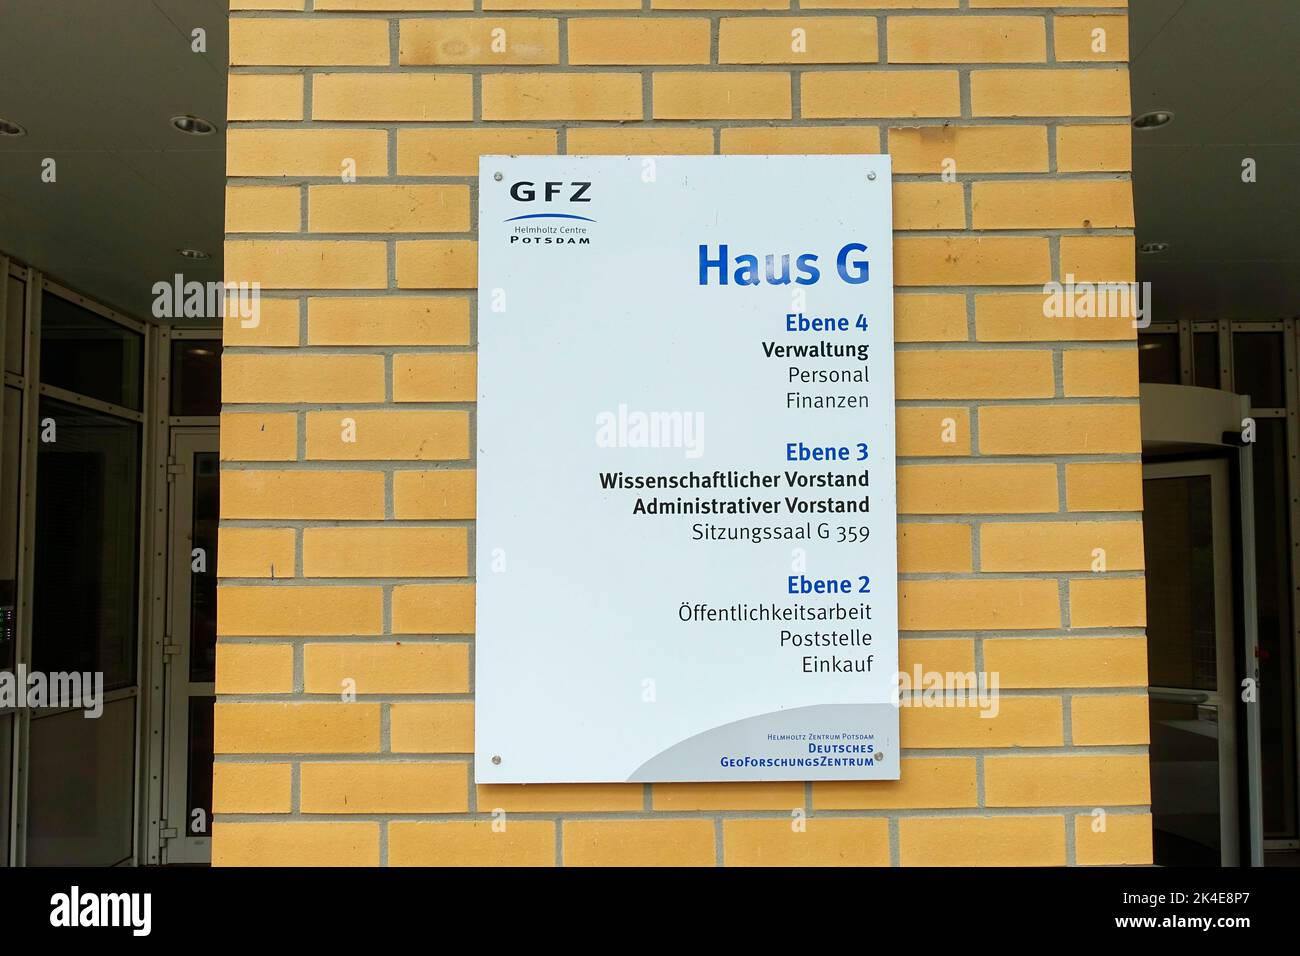 GFZ Helmholtz Center, Potsdam, German Geo Research Center, GFZ Helmholtz-Zentrum, Postam, Deutsches Geoforschungszentrum, Potsdam, Germany Stock Photo